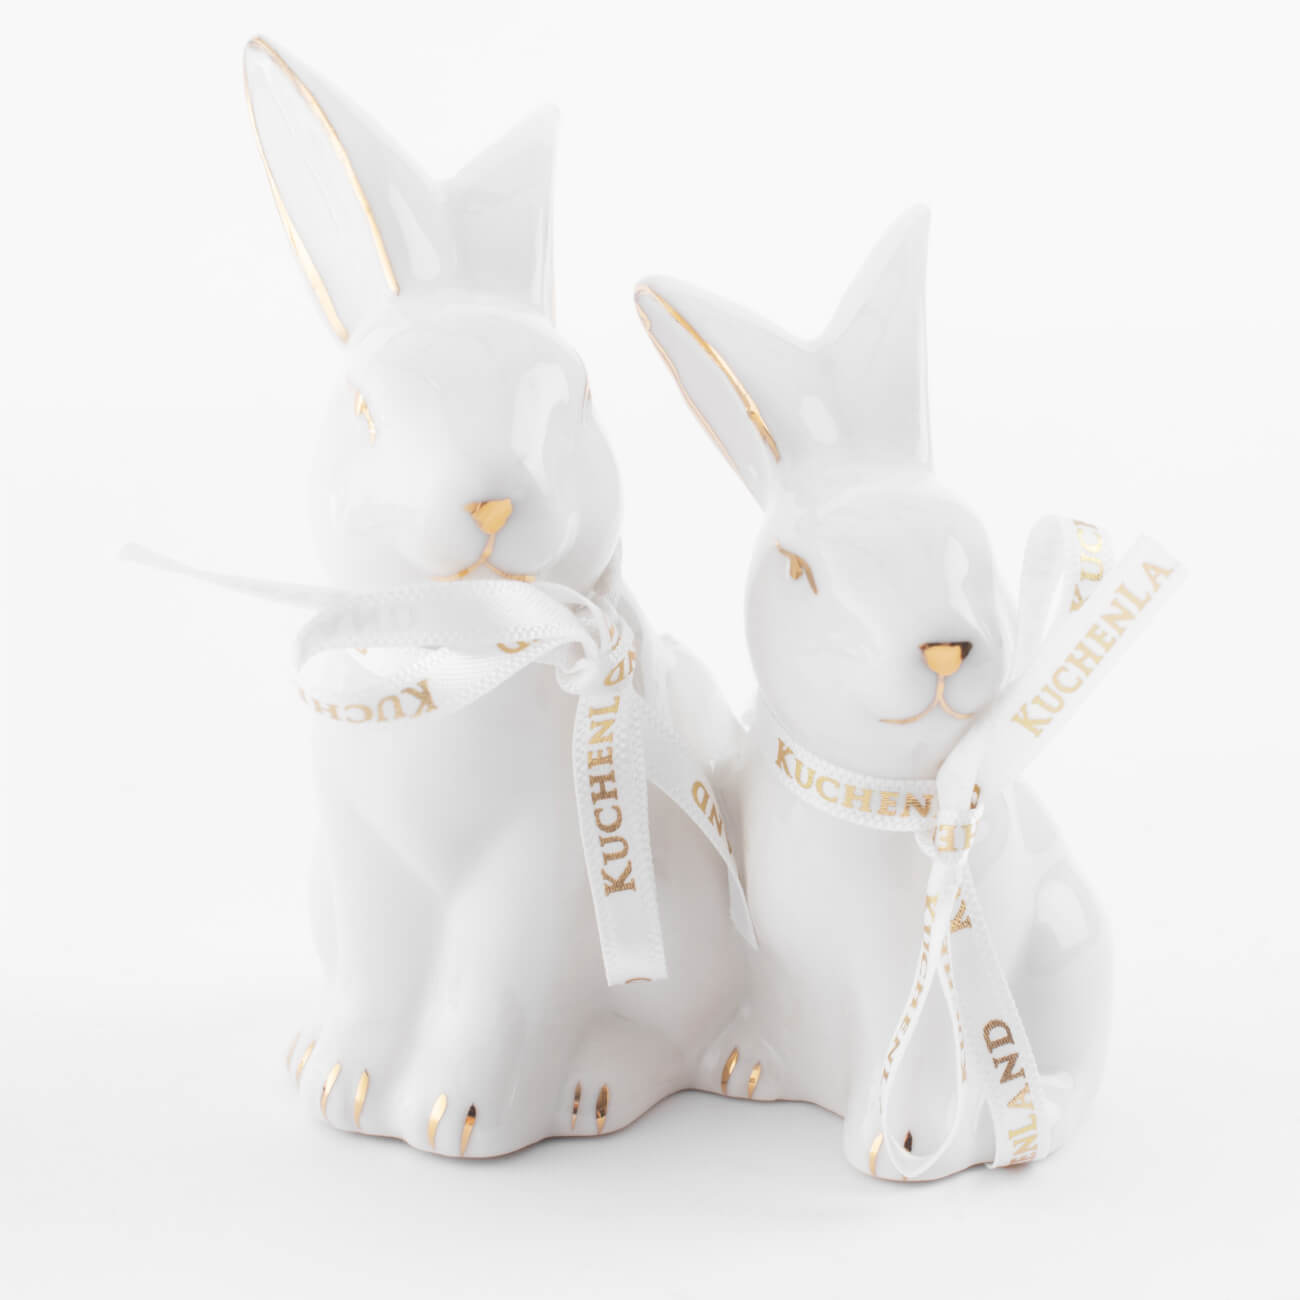 подставка для зубочисток 10 см фарфор p бело золотистая кролик easter gold Статуэтка, 9 см, фарфор P, бело-золотистая, Кролики, Easter gold